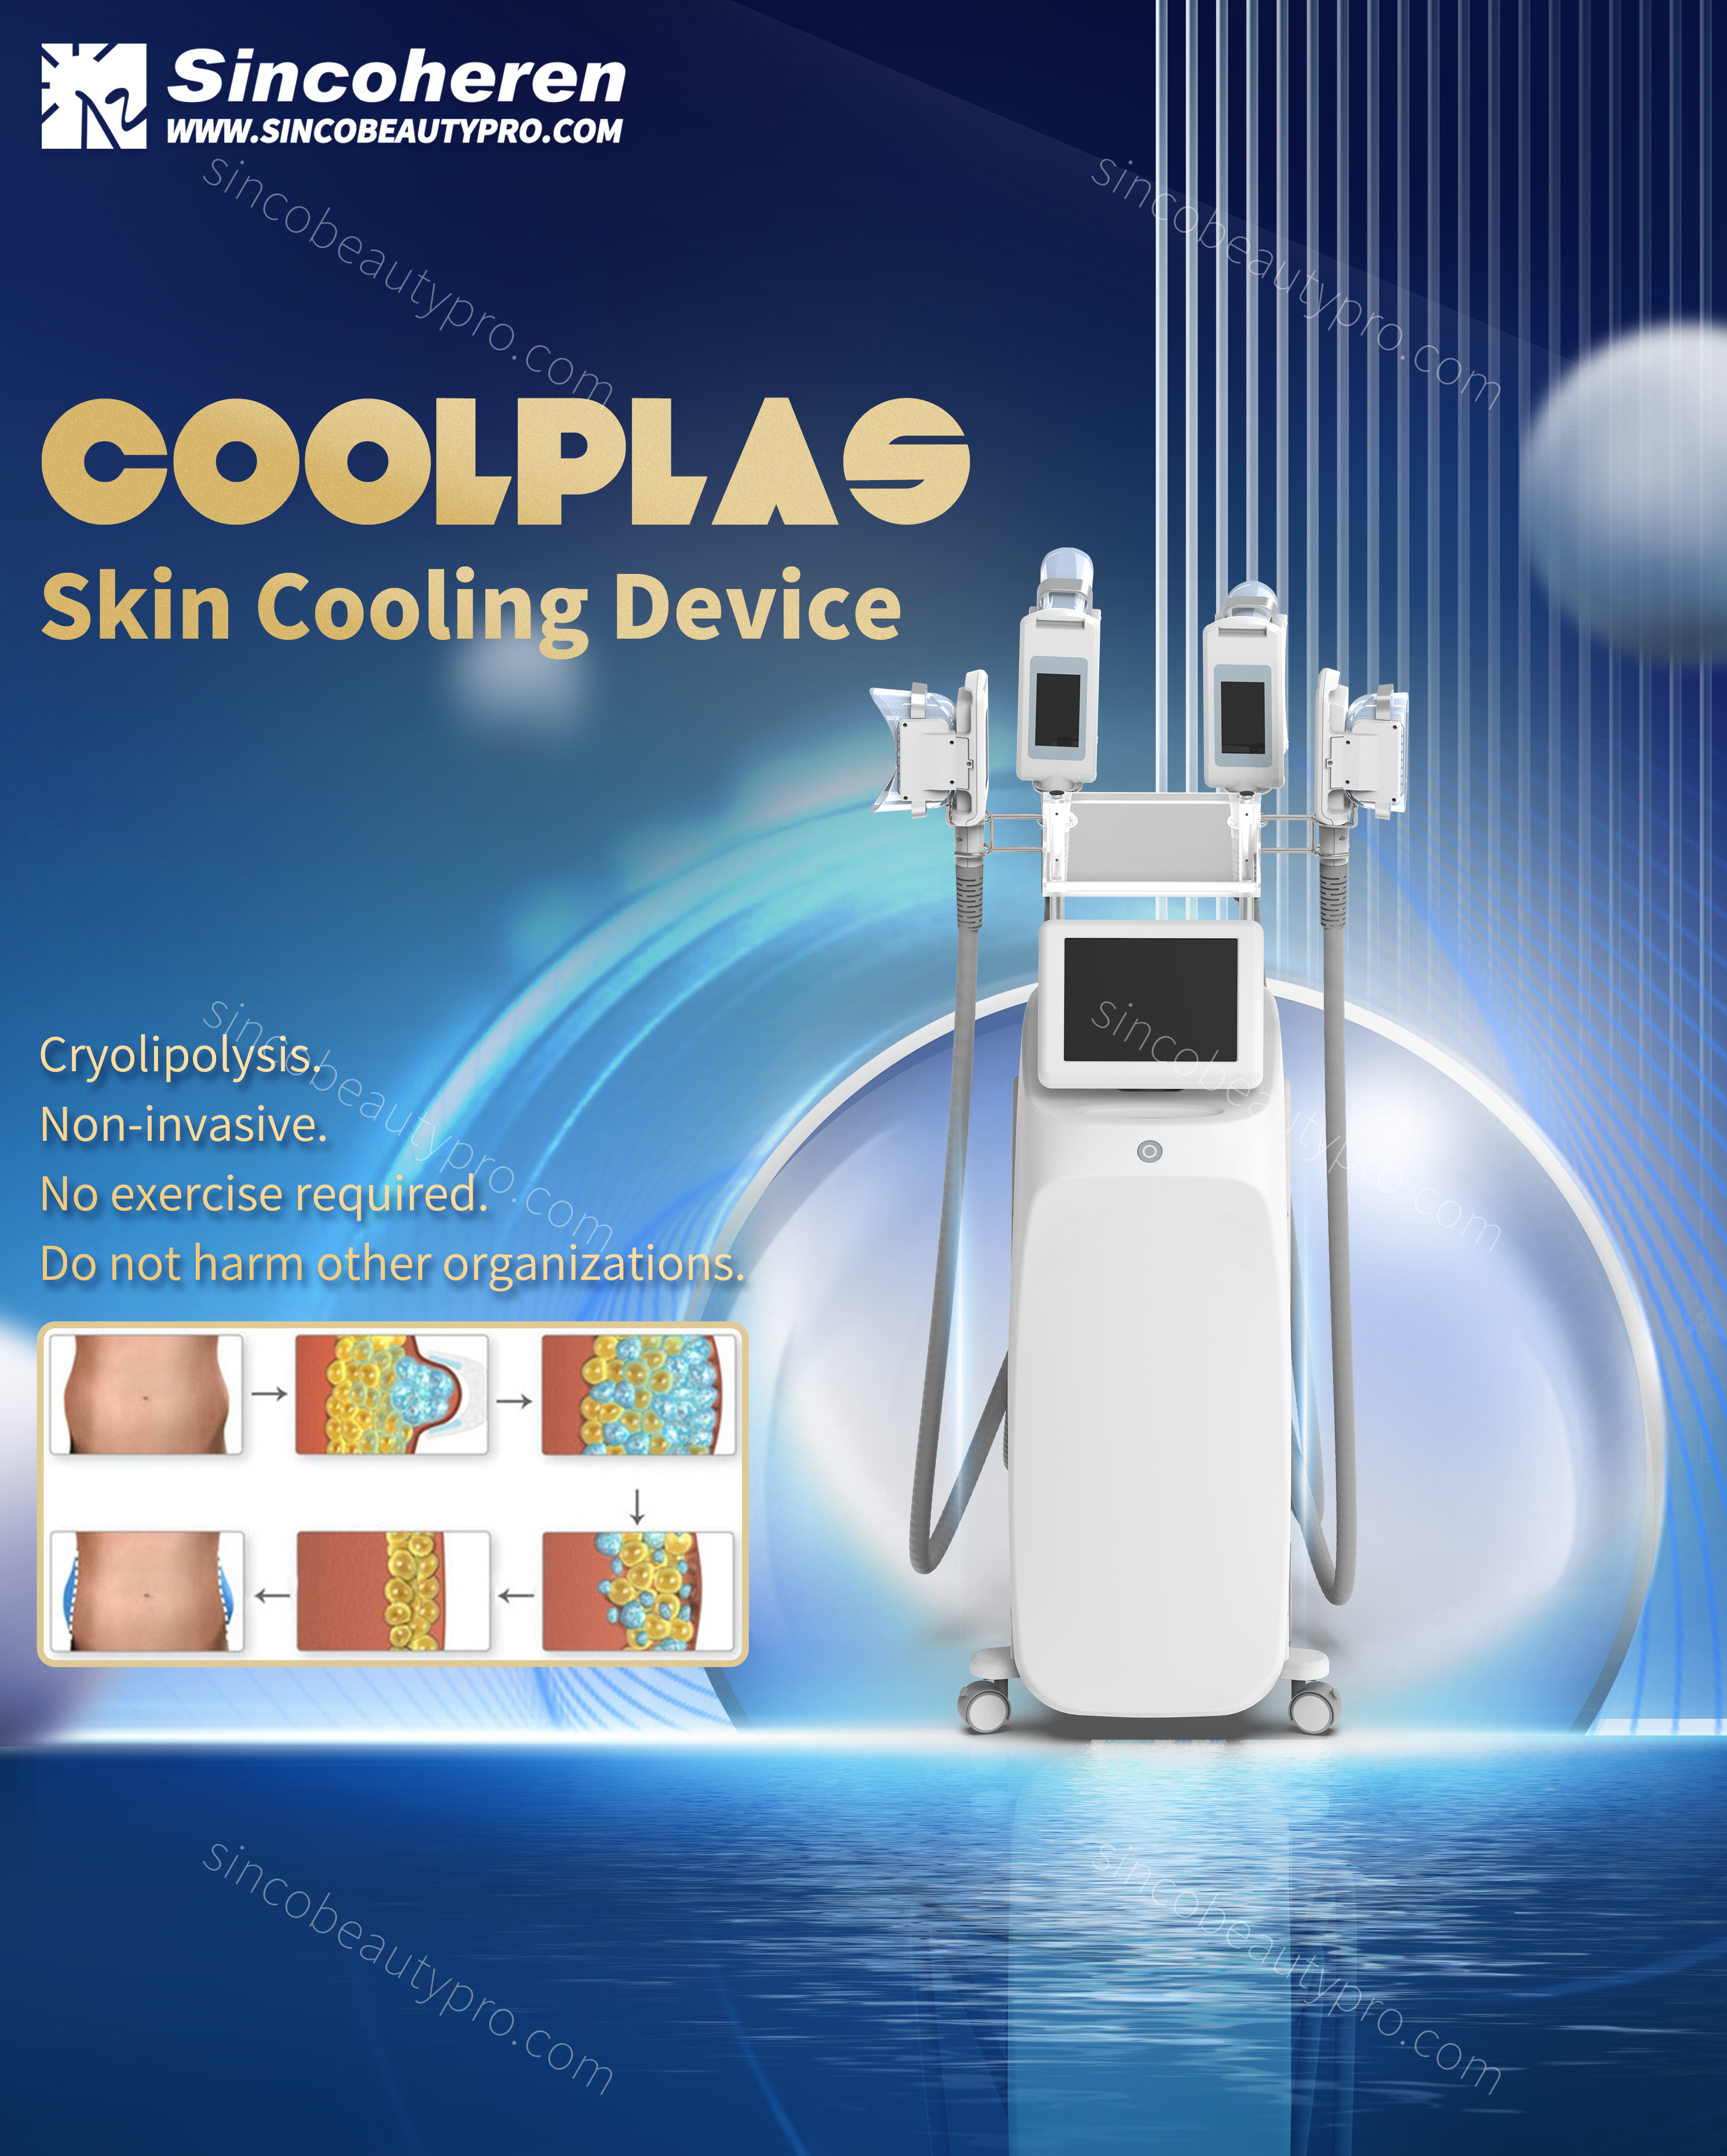 A Coolplas gép új modellje 4 fogantyúval, külön vezérléssel, nagyobb hatékonysággal